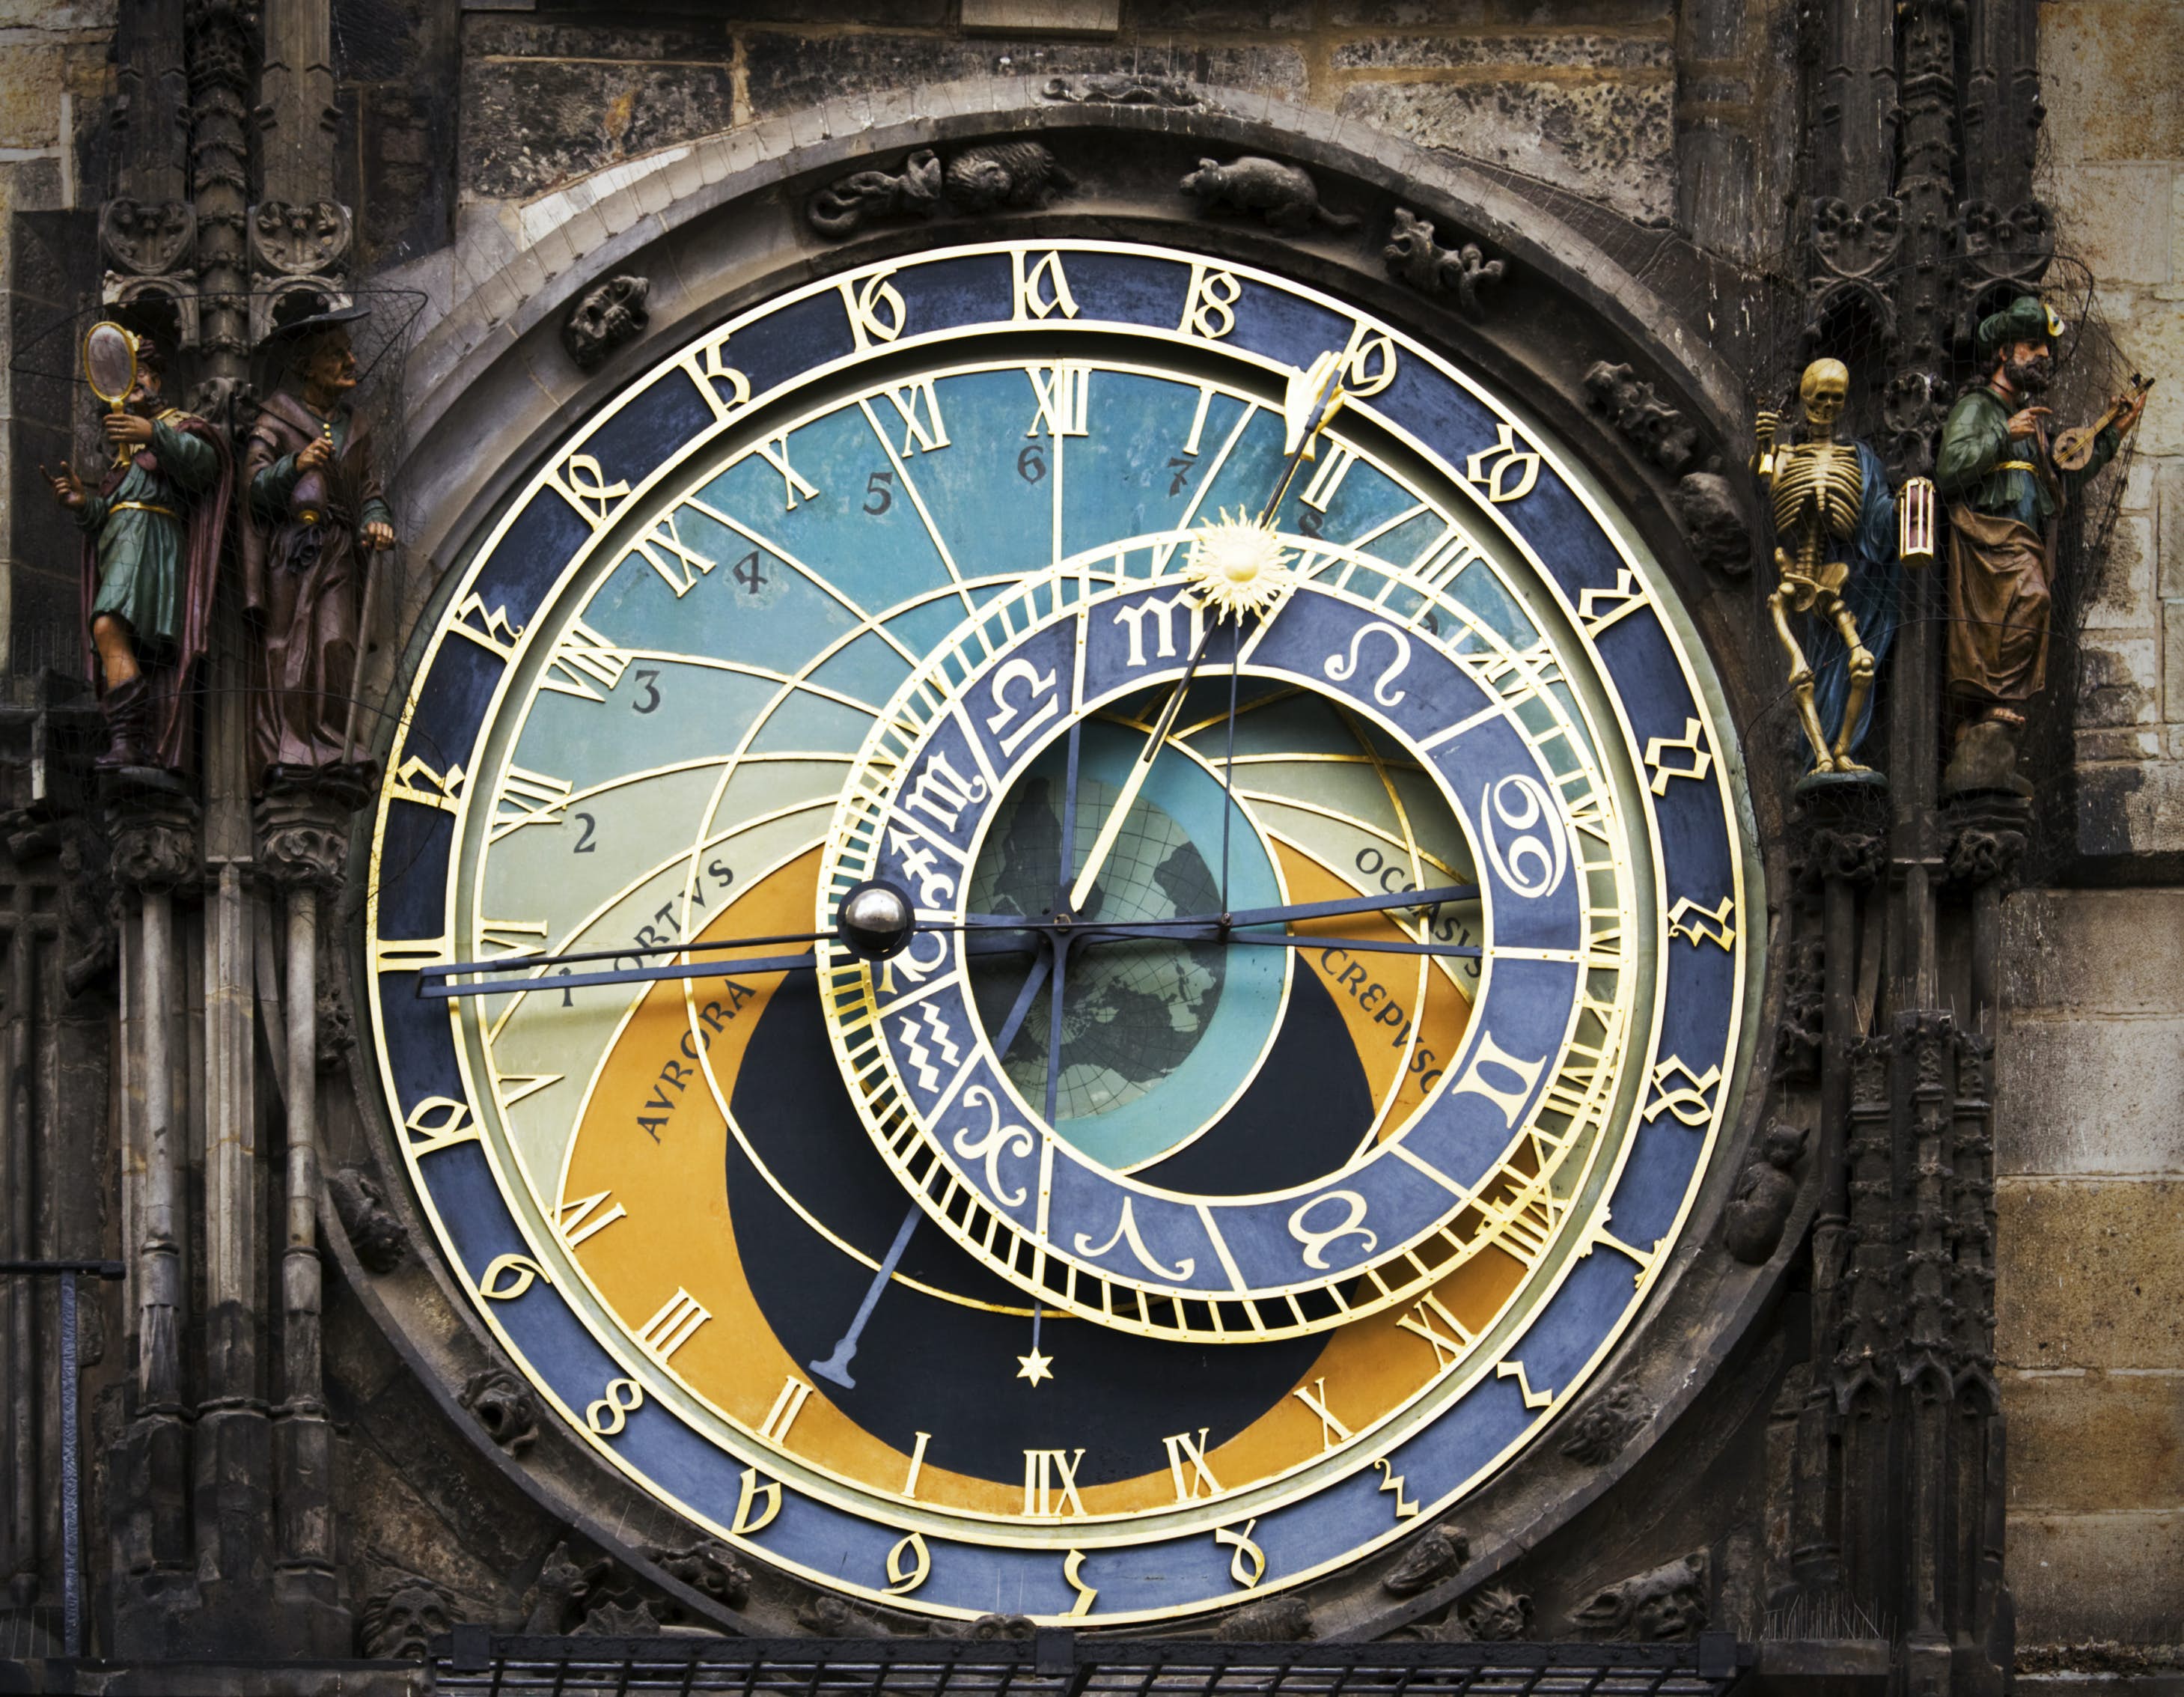 A close up shot of astronomical clock dial